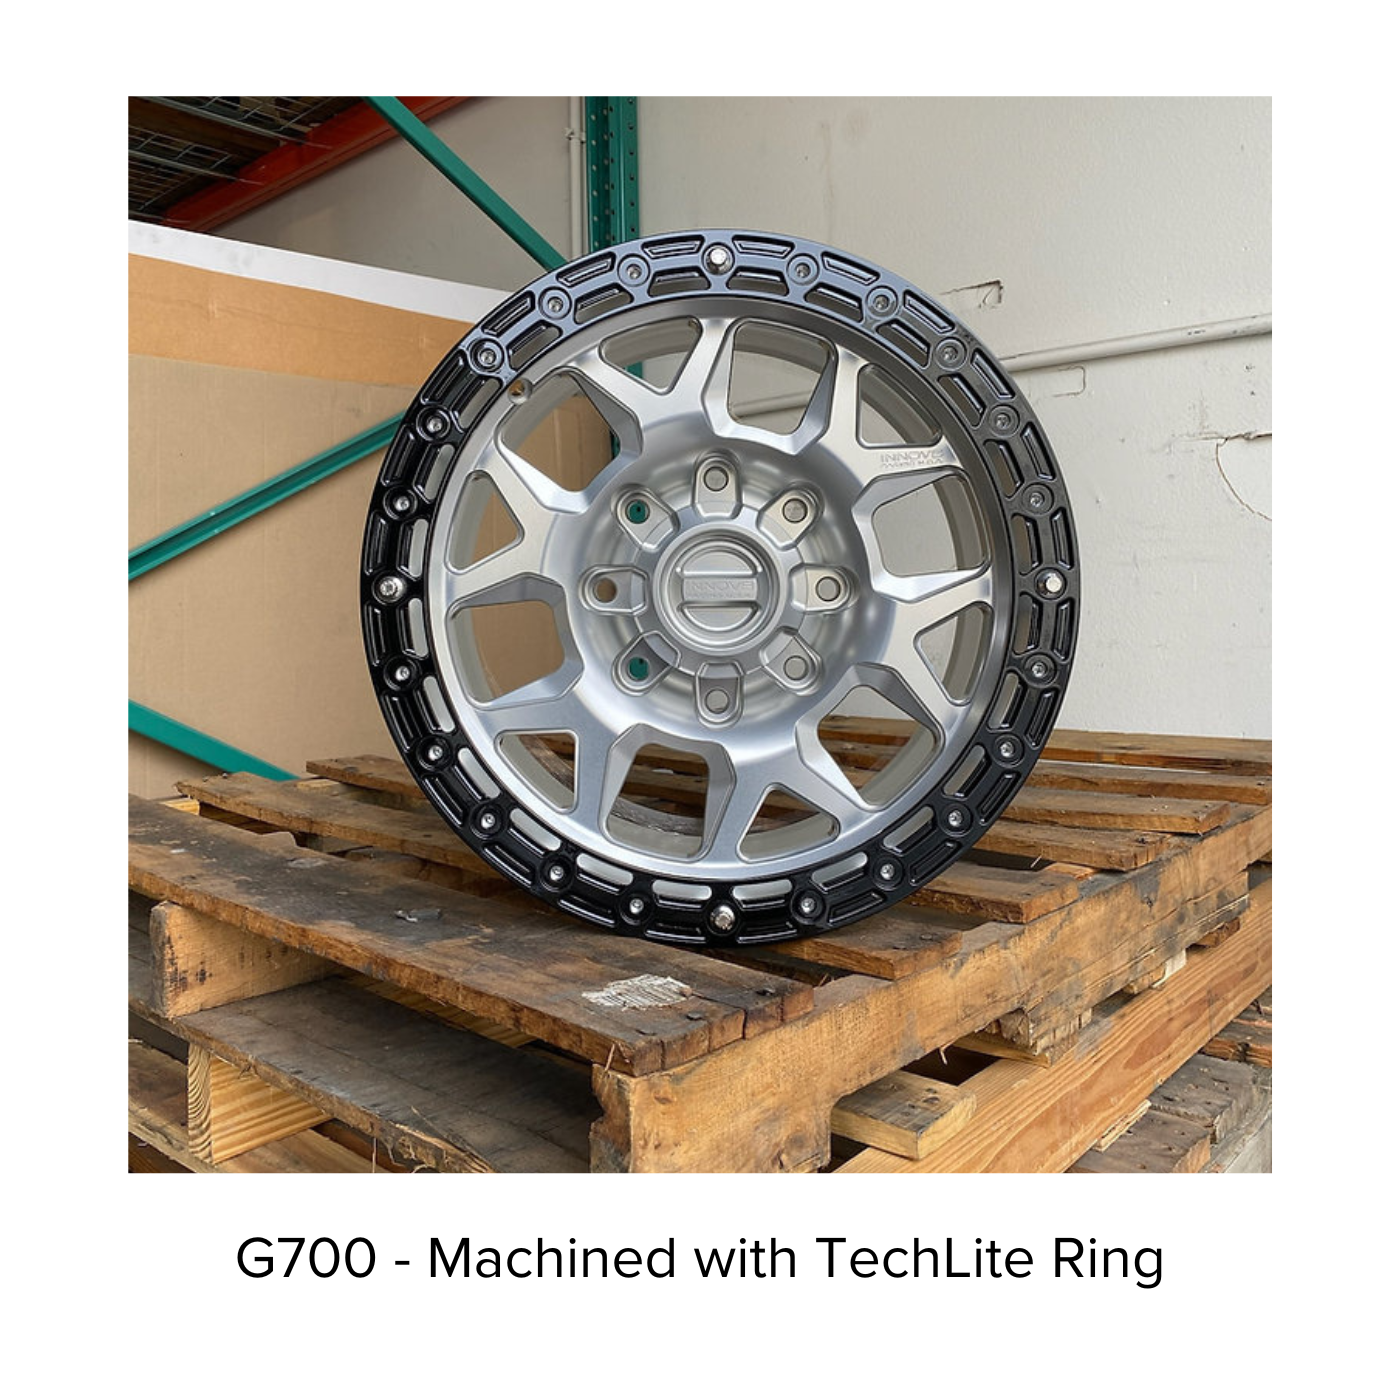 G700 Simulated Beadlock Wheel 17x8.5" 8 Lug - TechLite Ring display